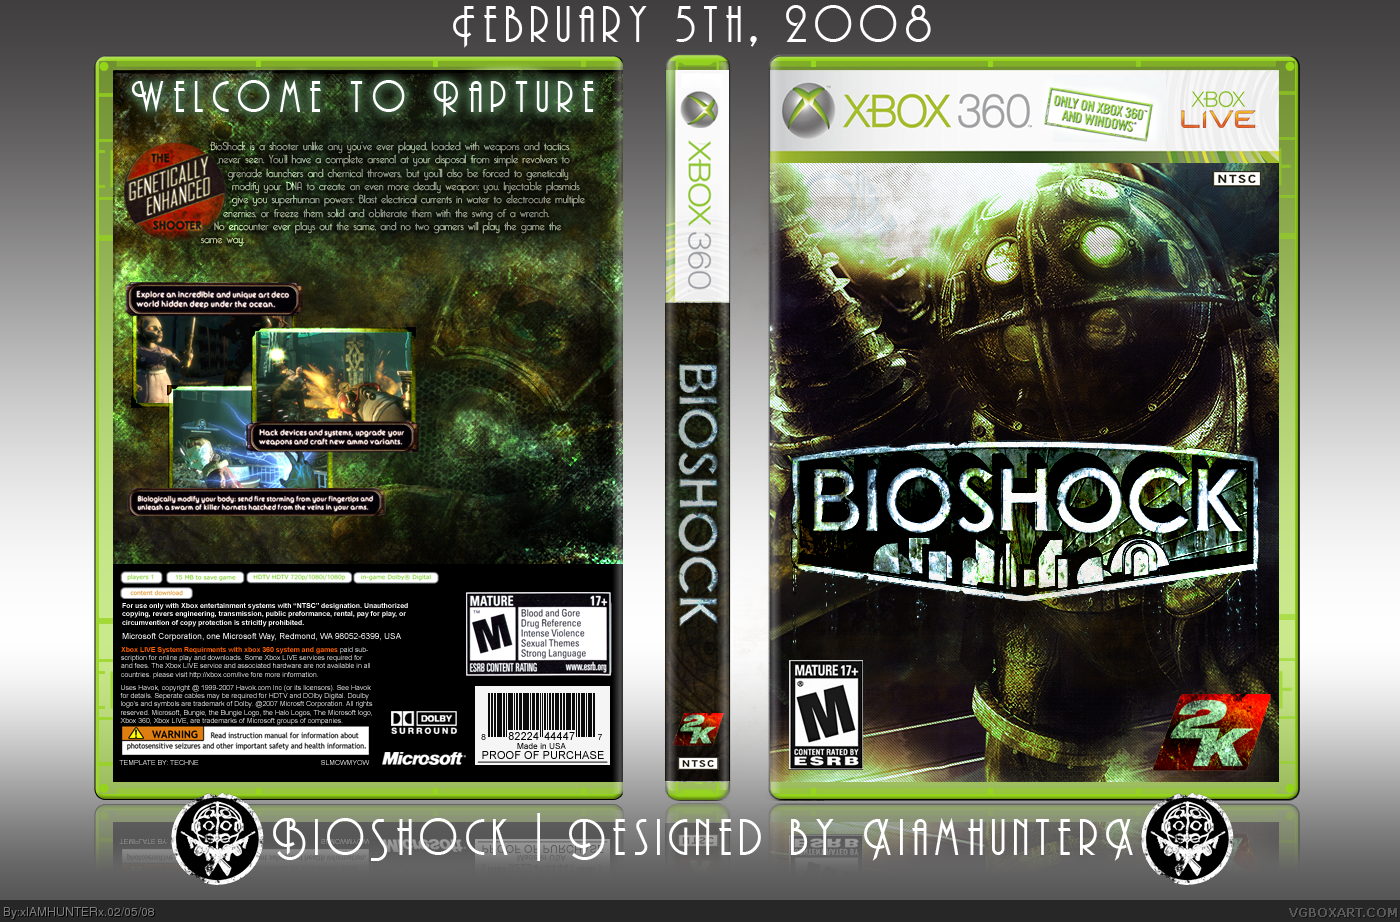 Bioshock Xbox 360 обложка. Биошок 2 обложка иксбокс360. Bioshock 2 Xbox 360 обложка. Хвох 360 диск Bioshock 2. Выхода игр xbox